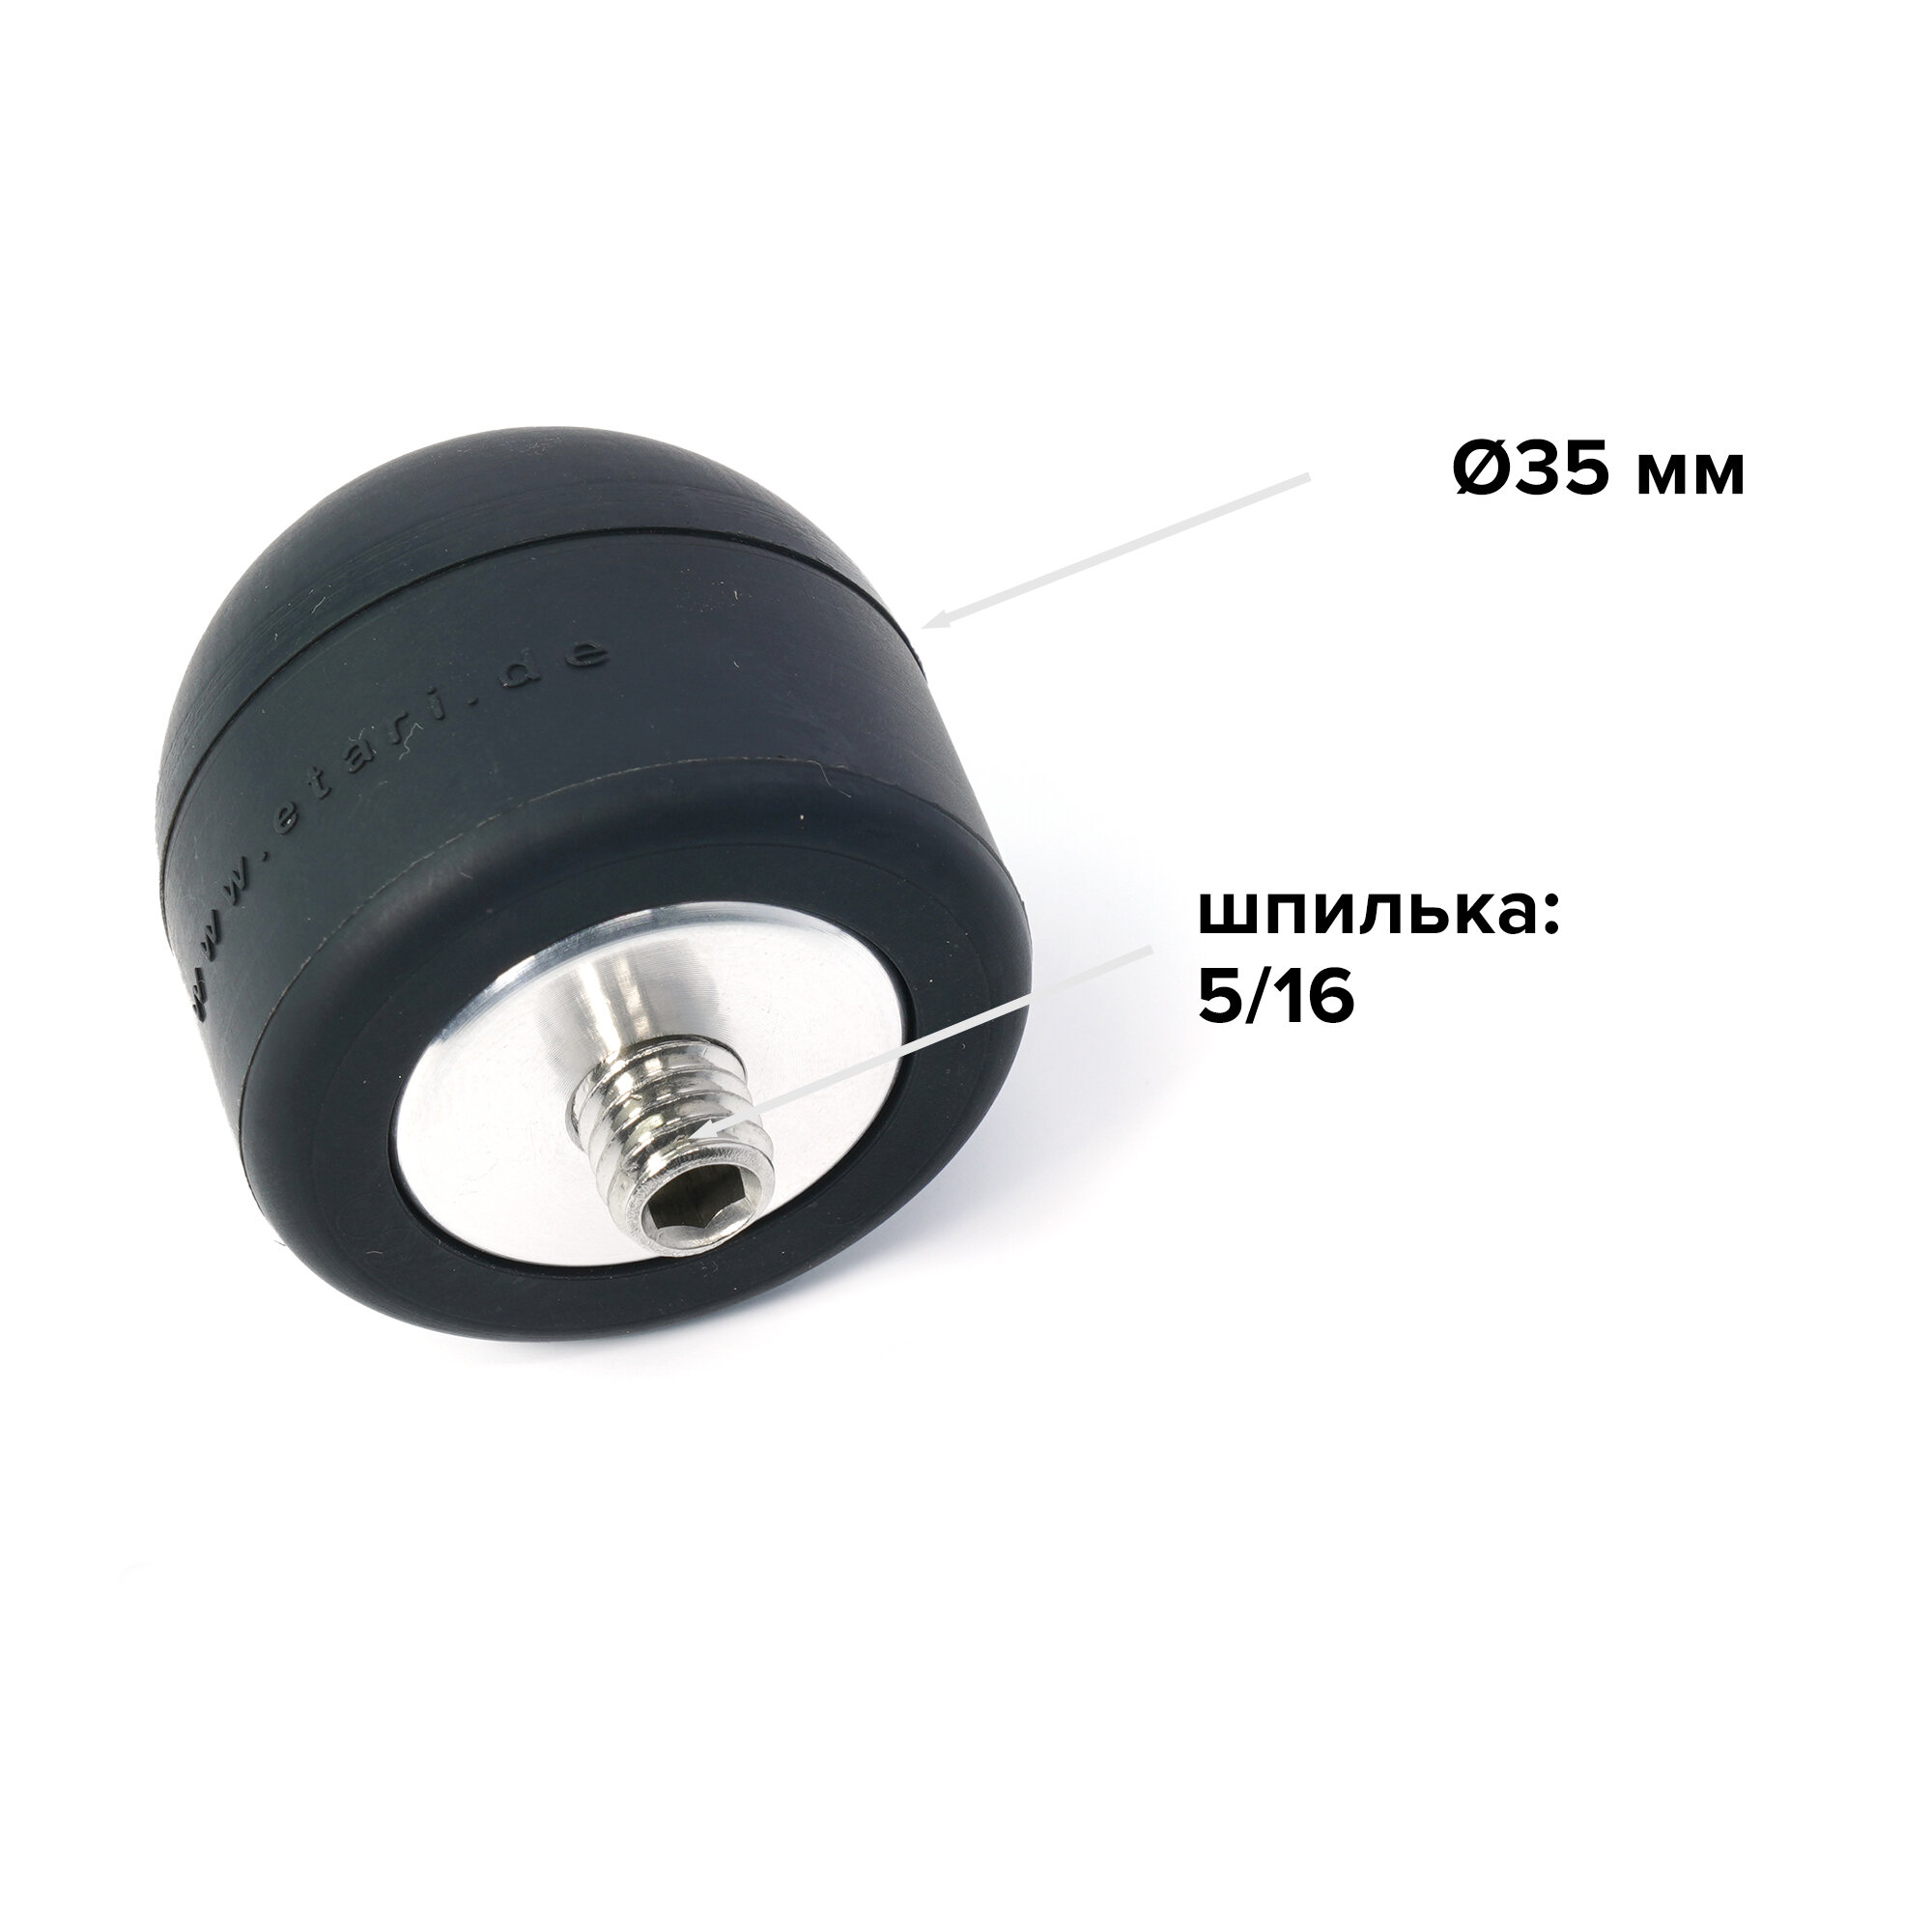 Неопреновая (резиновая) насадка ETARI GmbH Ø35 мм (5/16 и М6) для крючков или рихтовочных молотков PDR